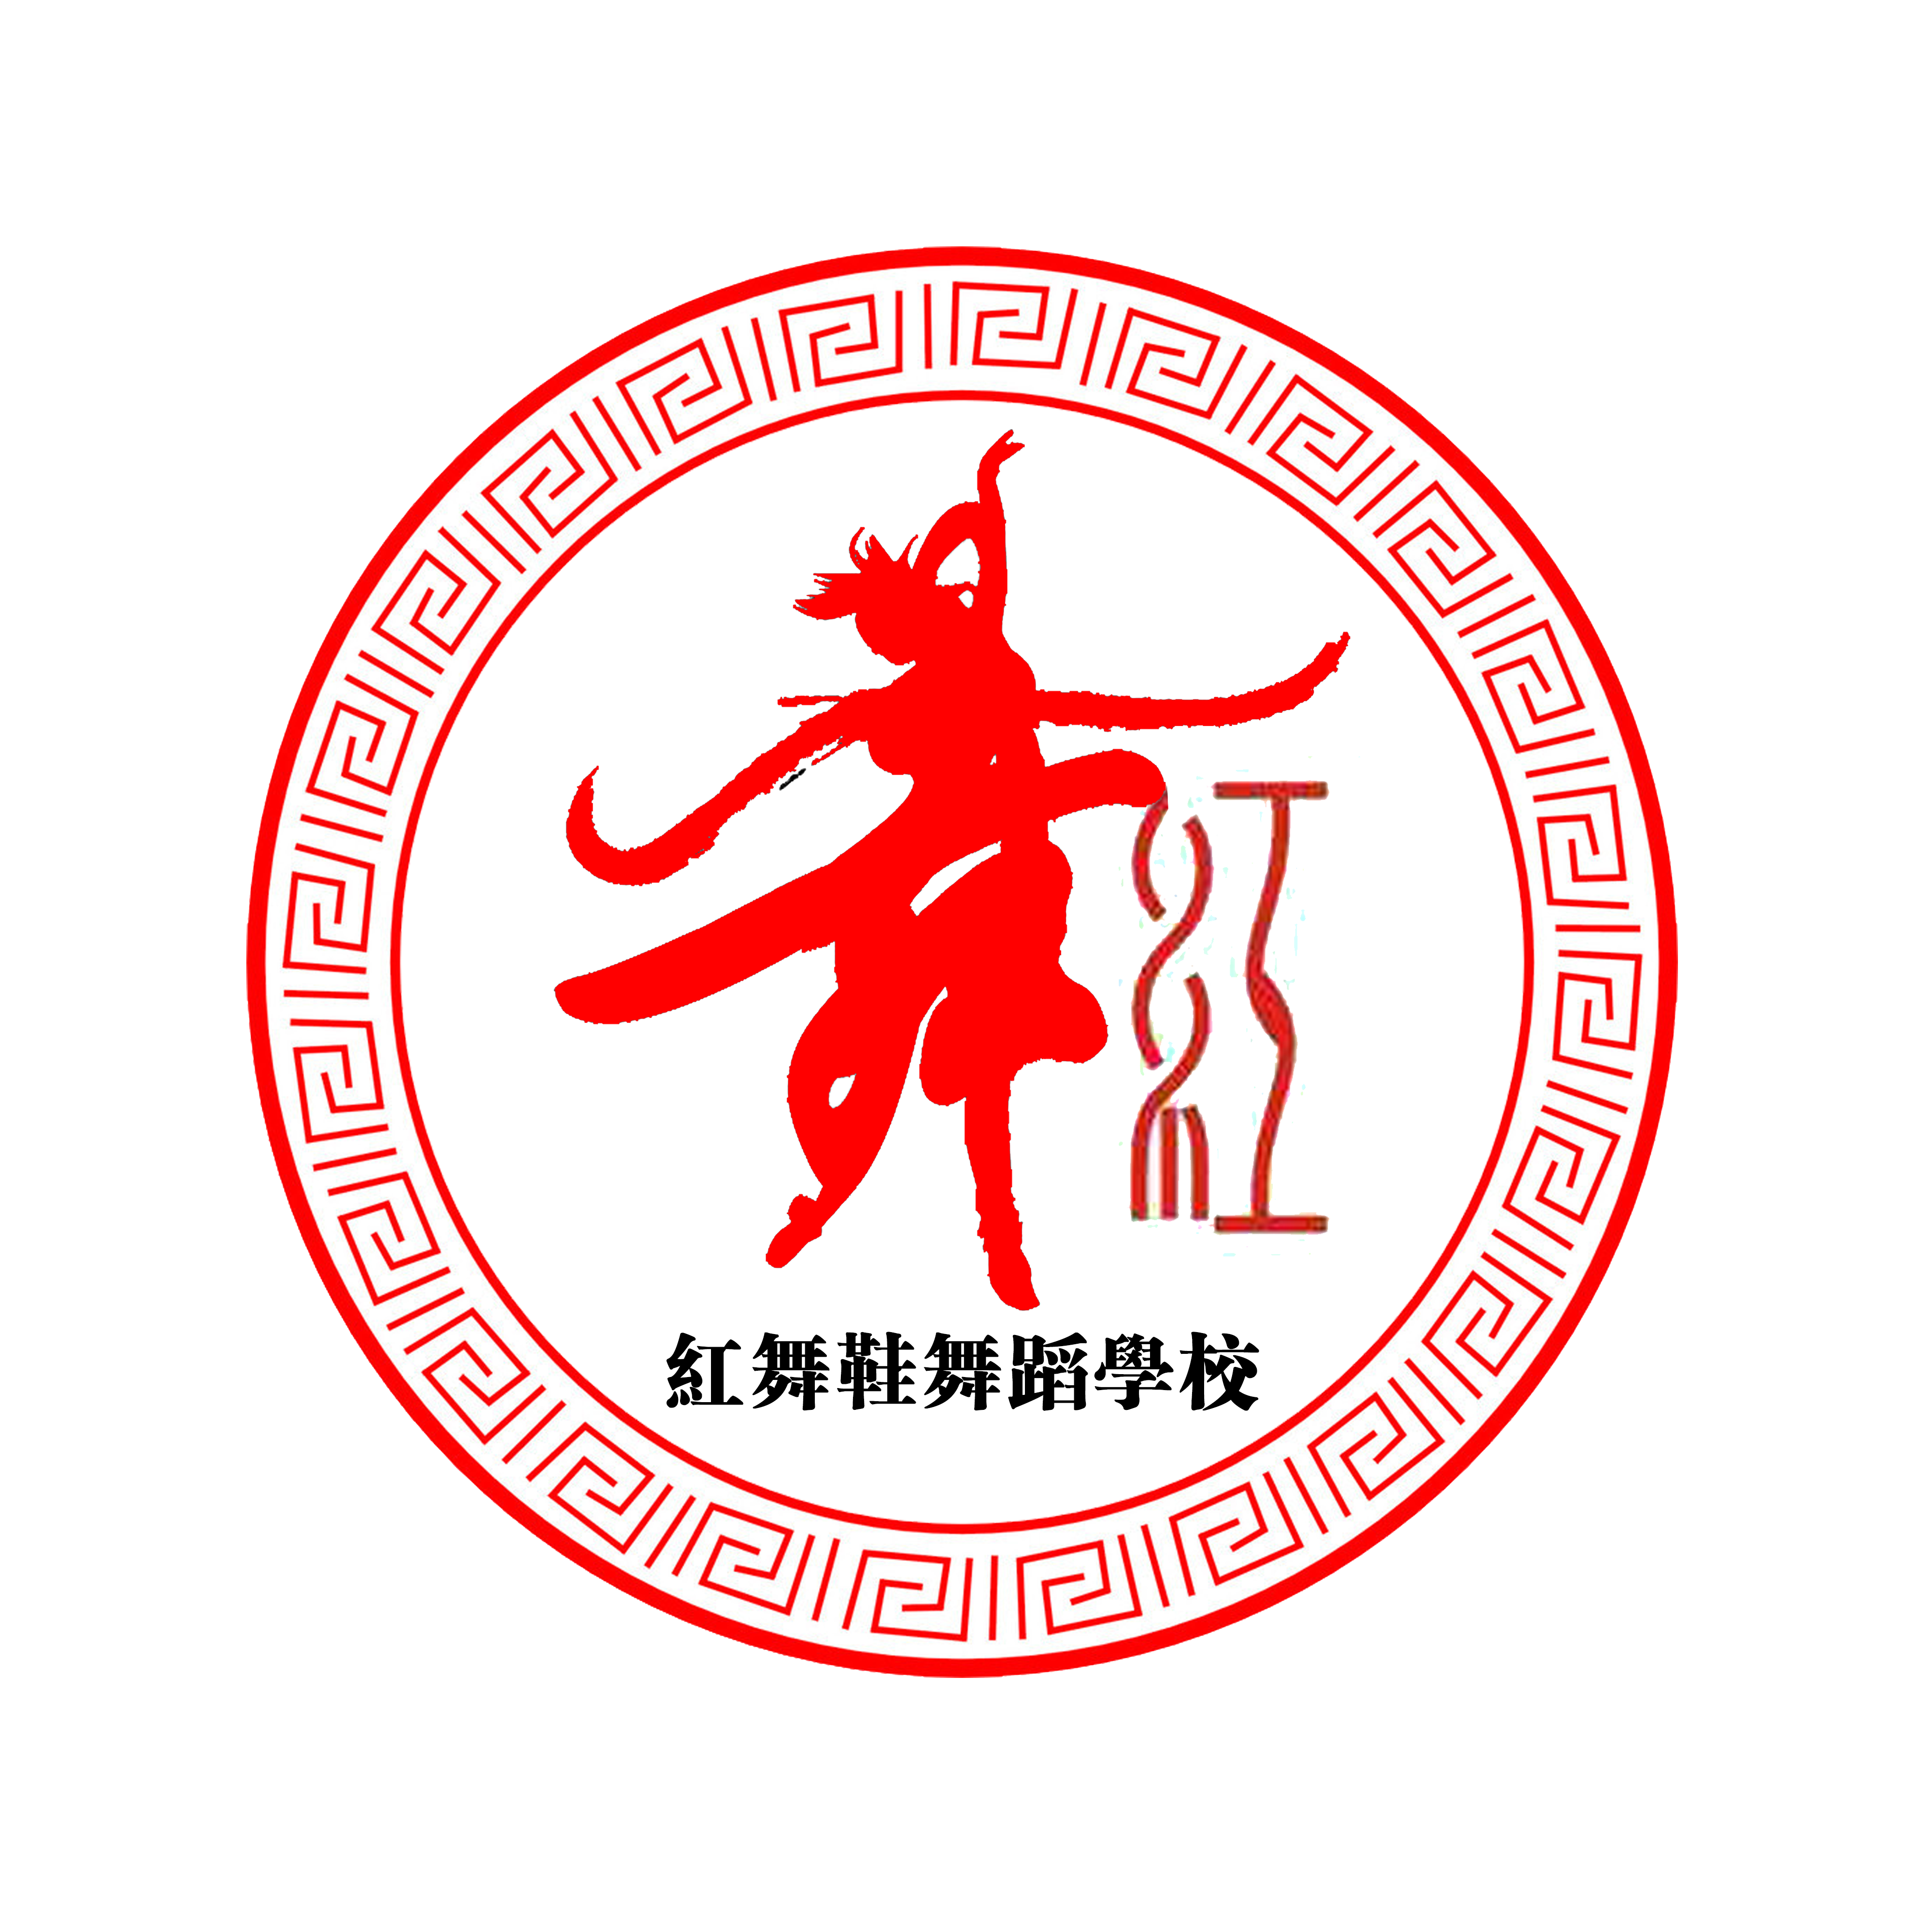 李志锋设计"红舞鞋舞蹈学校"、"琴韵筝坊"logo